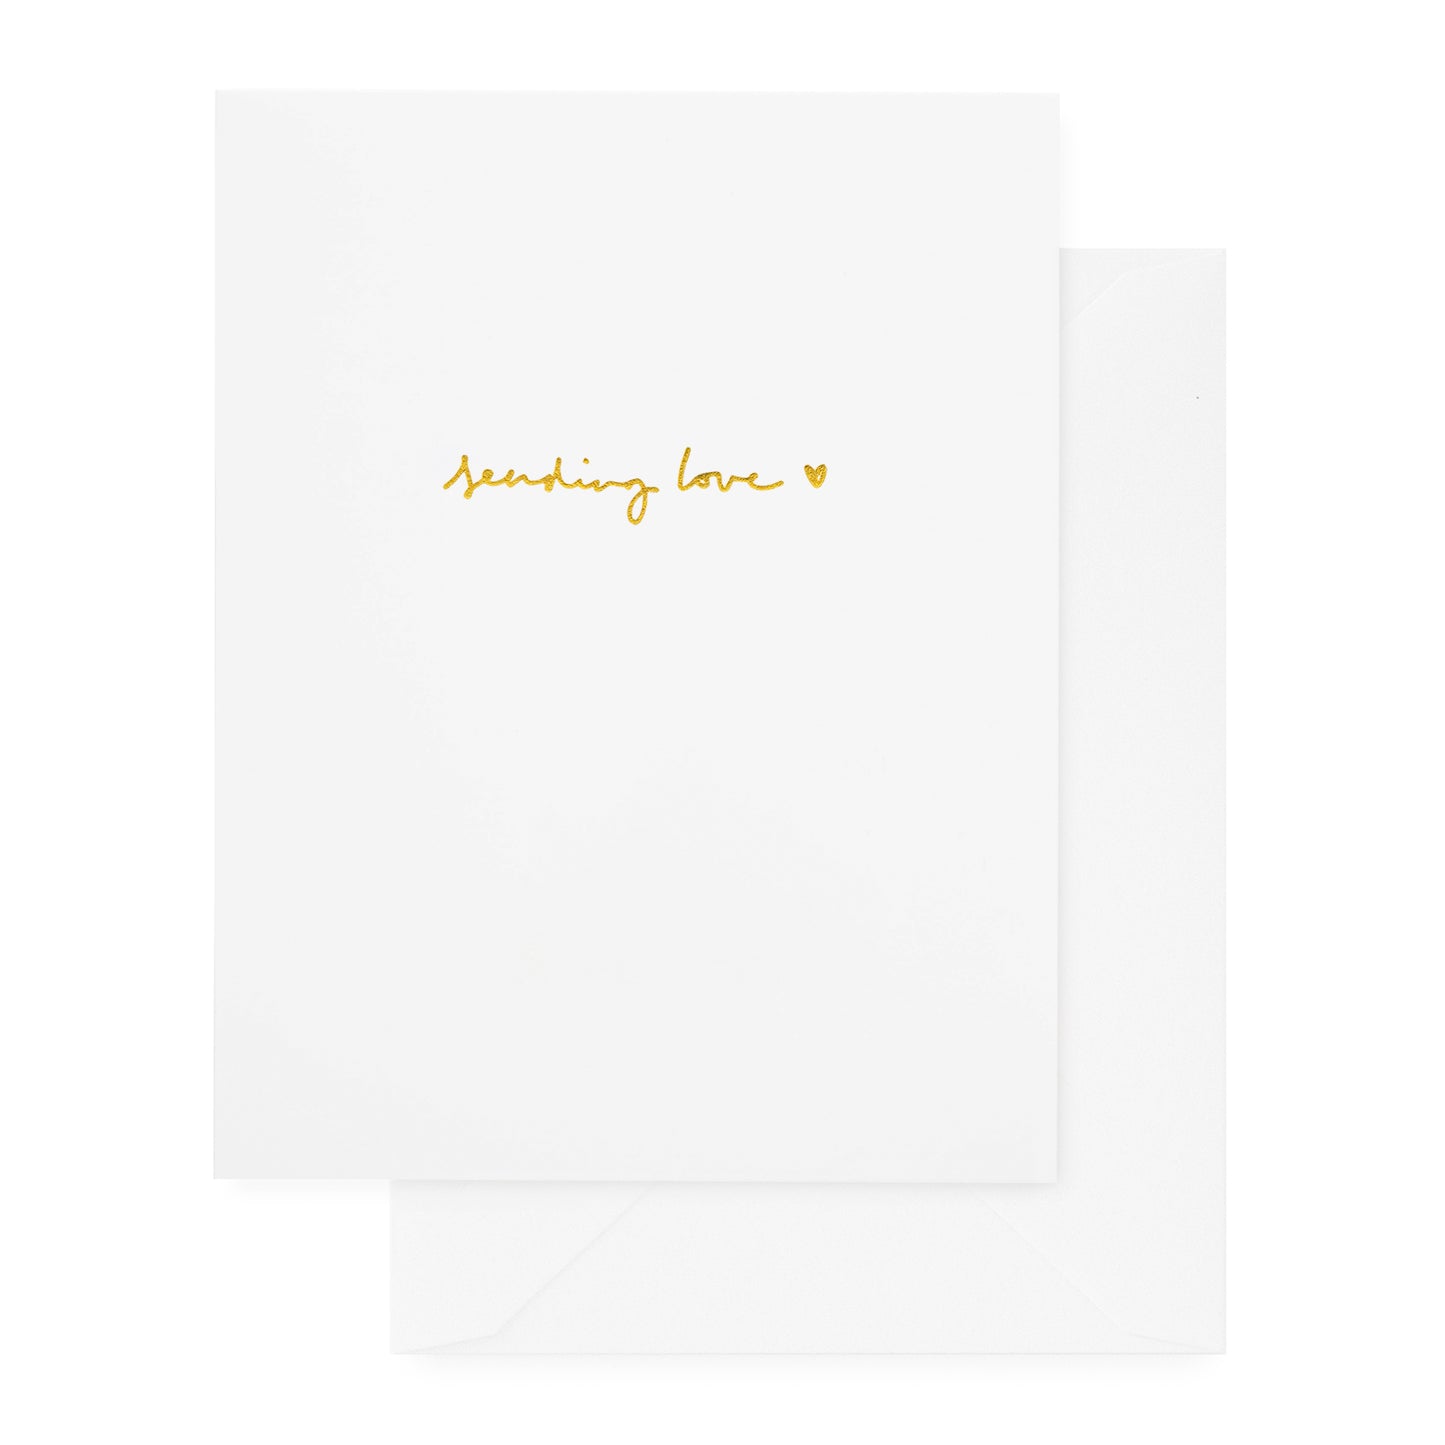 Gold foil sending love heart card